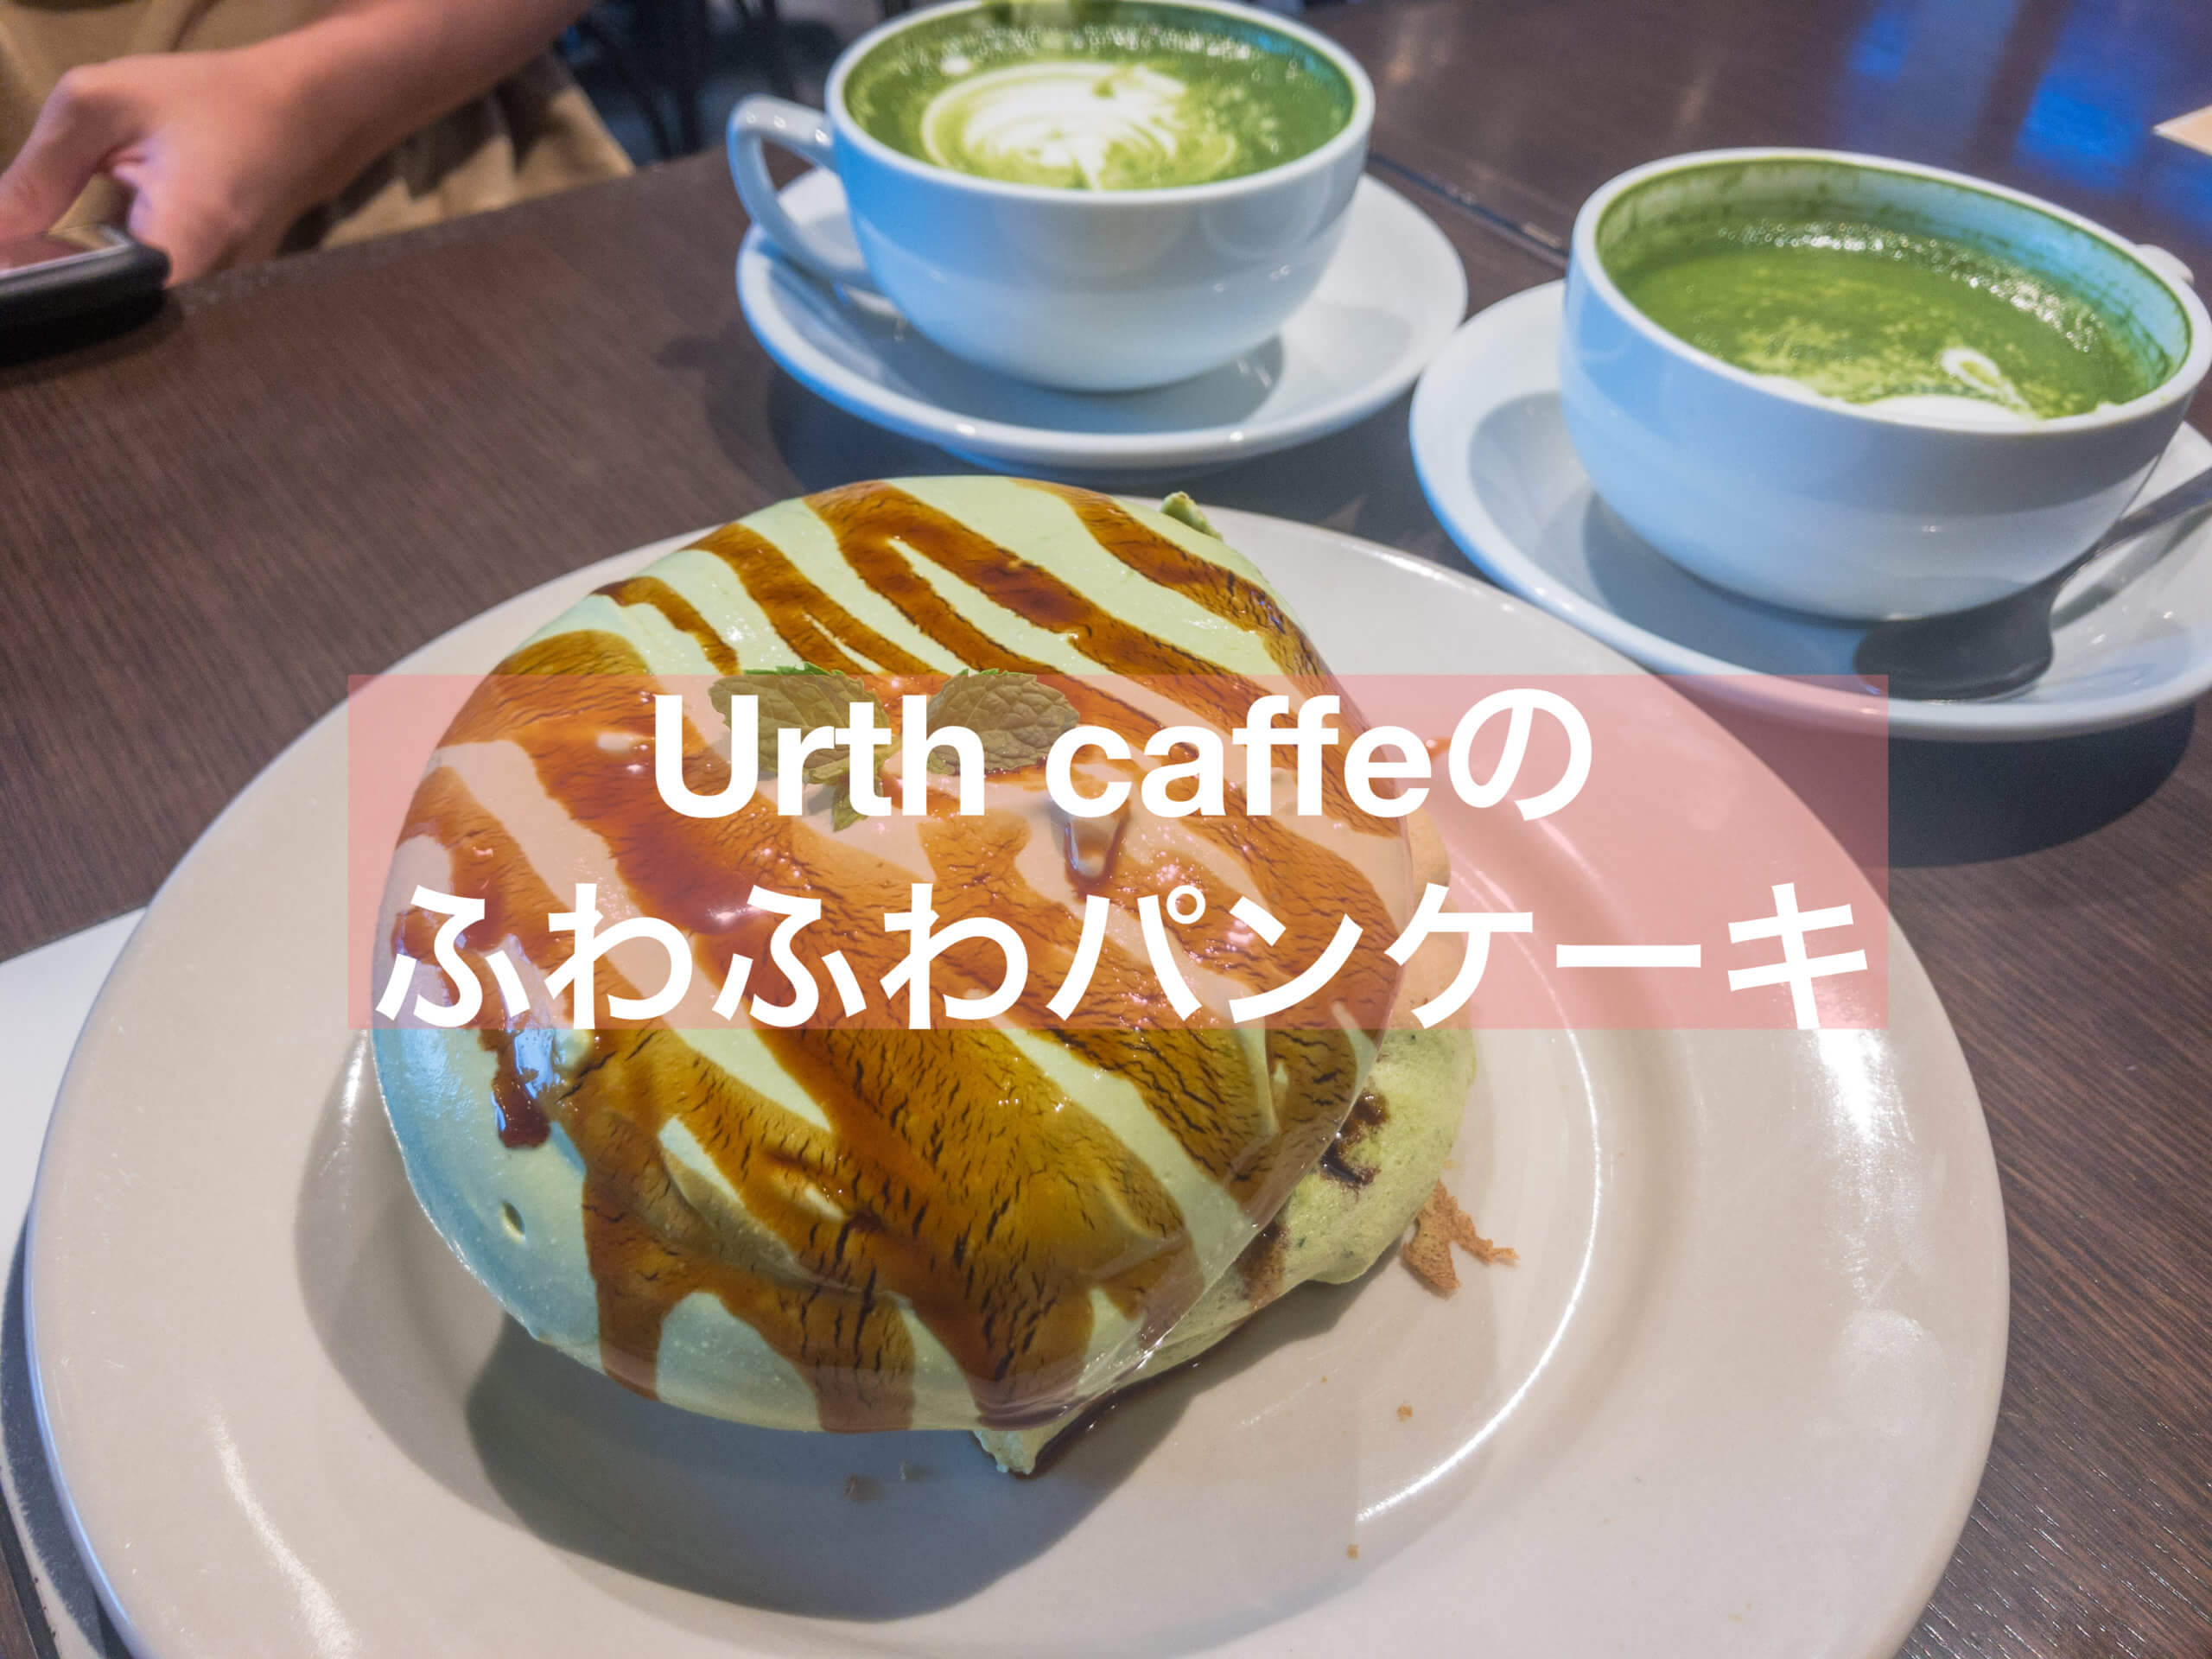 抹茶 Urth Caffeでマスカルポーネたっぷりのふわふわパンケーキを 表参道 抹茶スイーツの魅力を発信するブログ Matcha